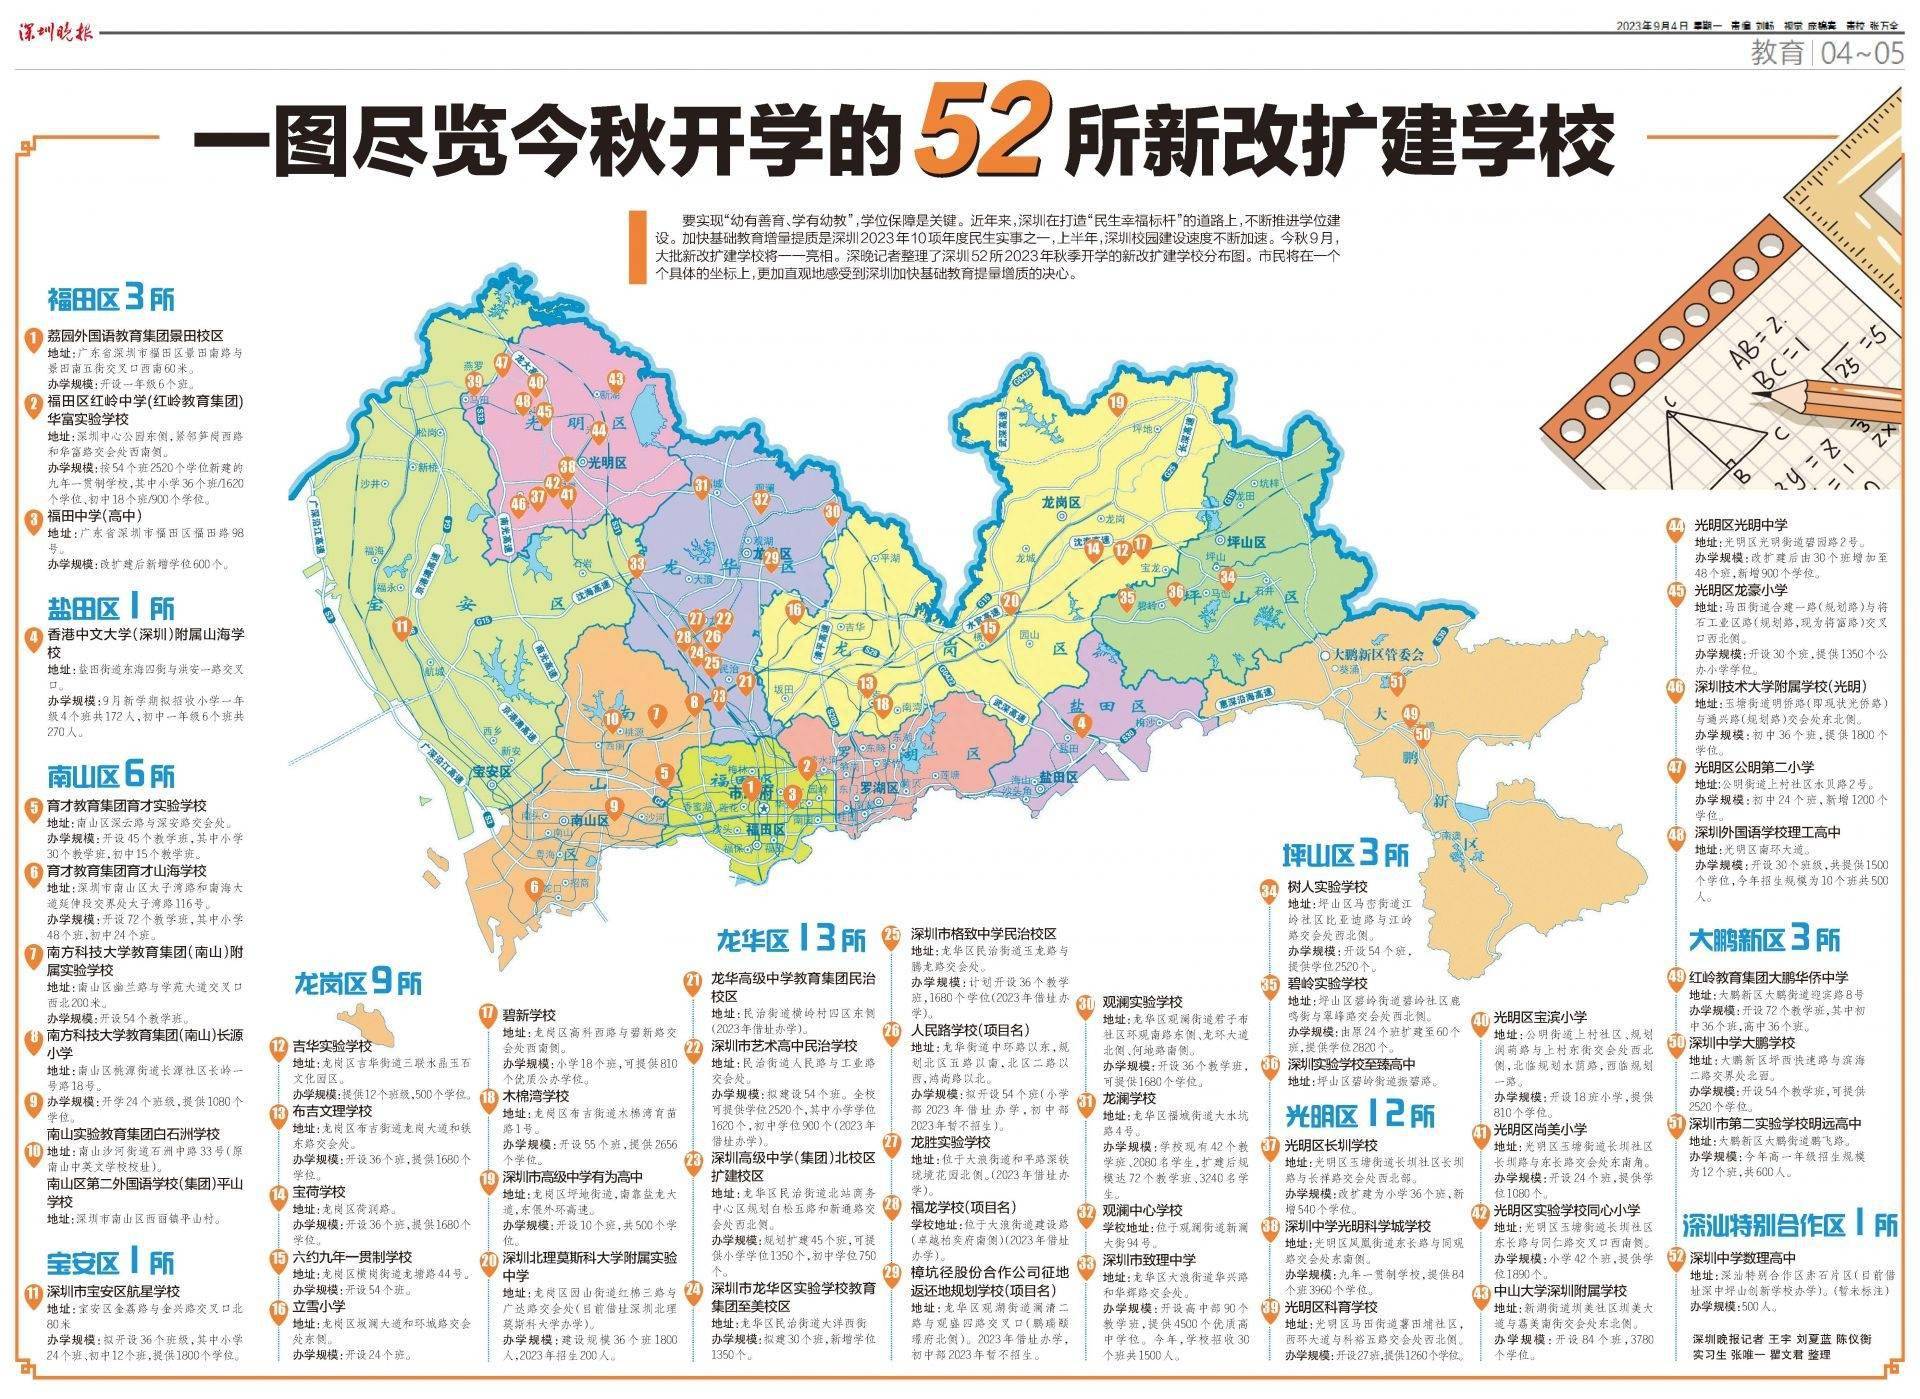 学校上新！深圳52所新改扩建学校今秋开学，一张地图看新校都在哪